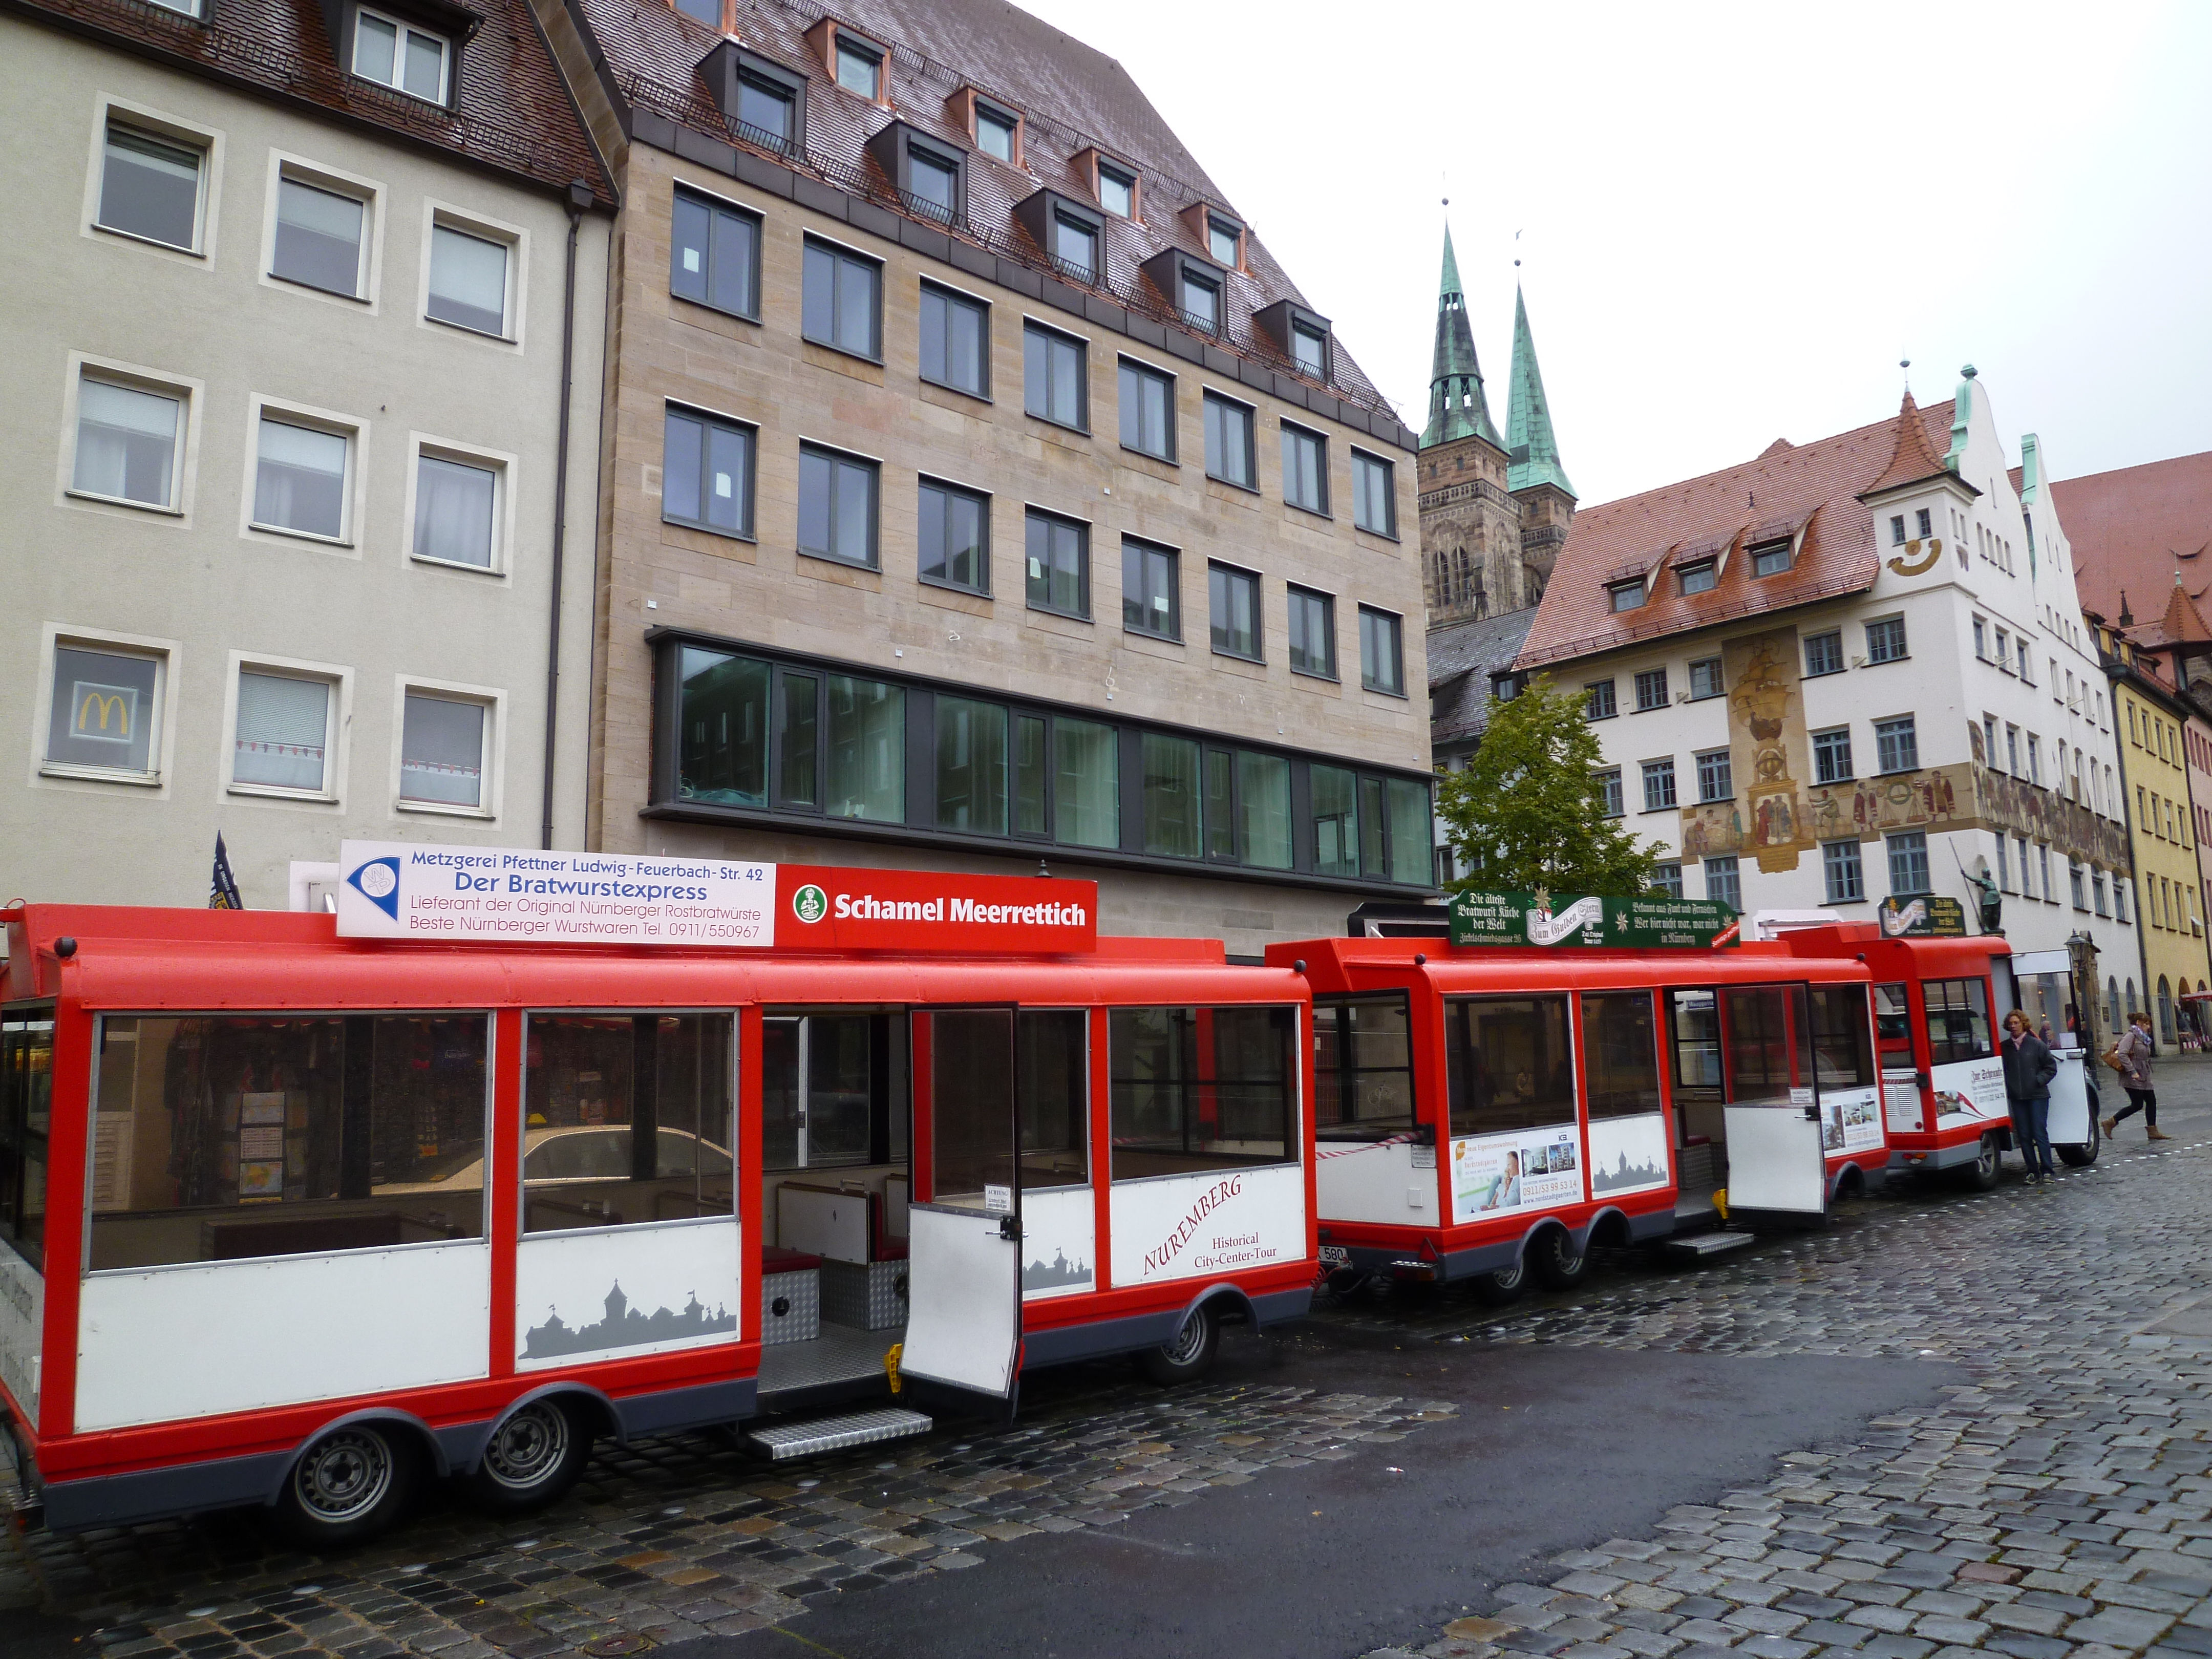 2013年10月 EuMC2013 Nuremberg観光ミニバス